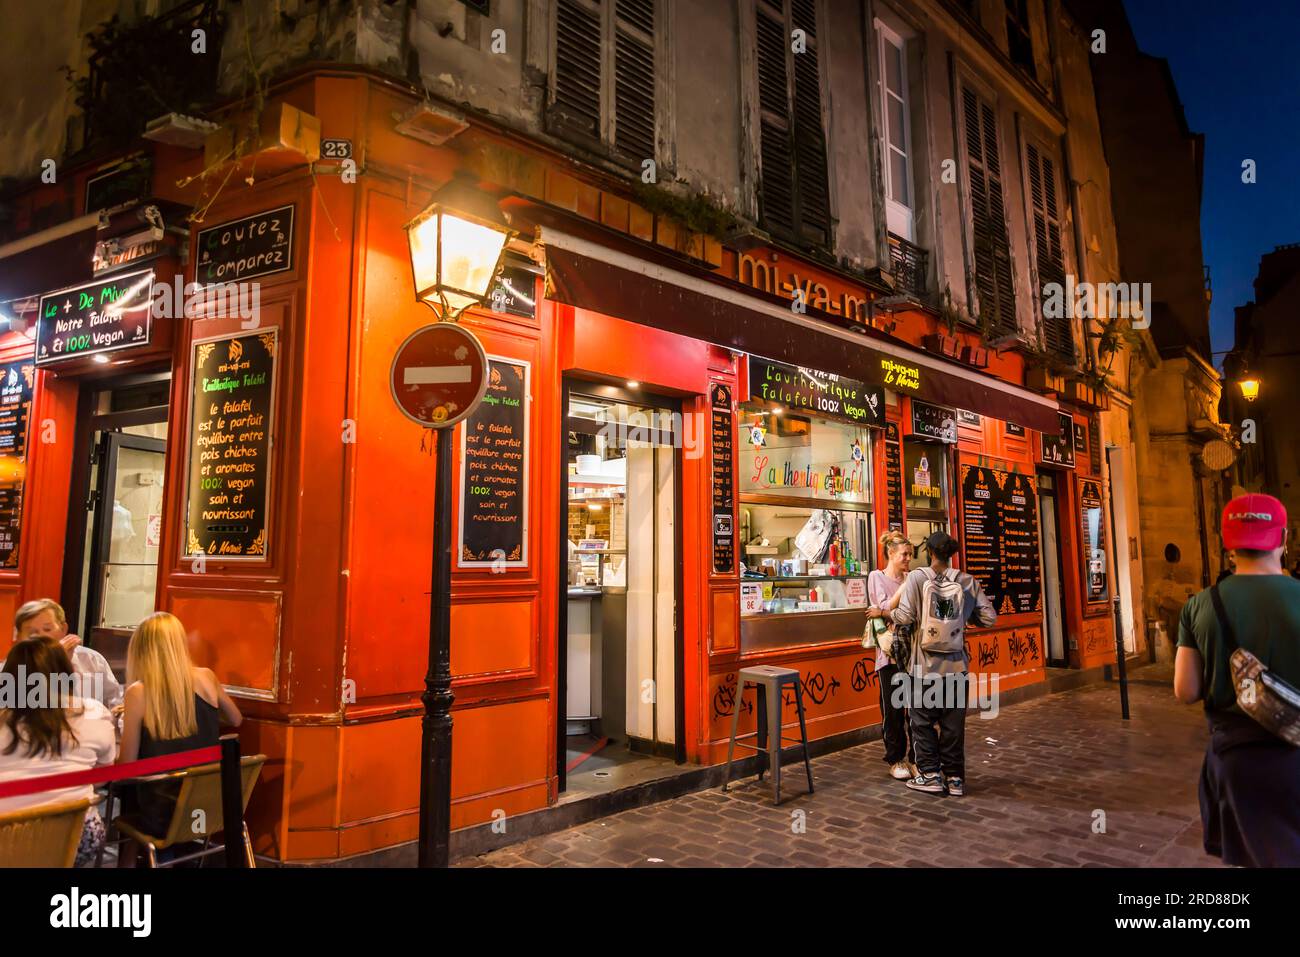 Restaurante falafel, barrio de Le Marais, París, Francia Foto de stock